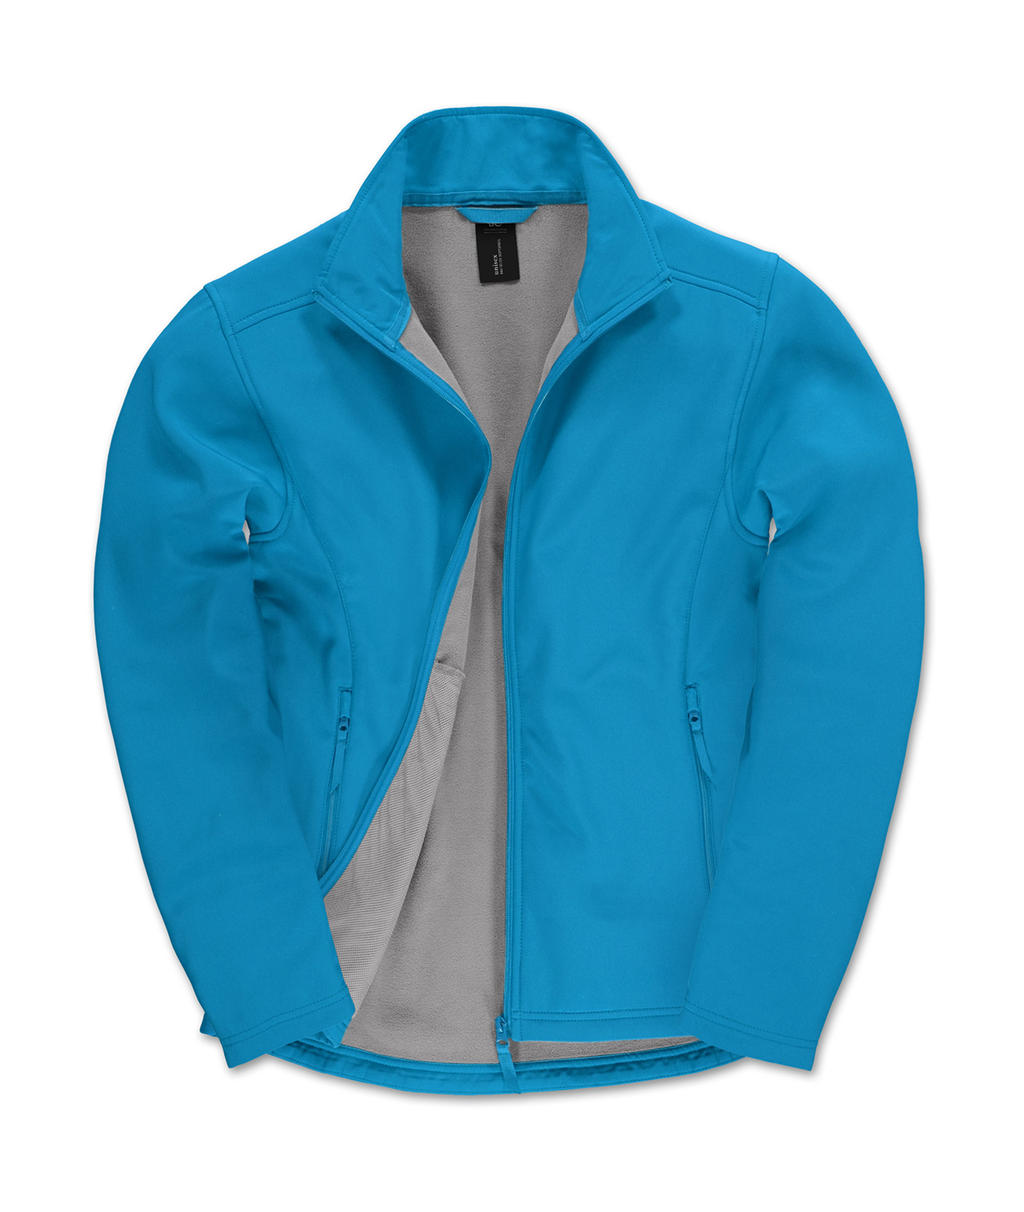  ID.701 Softshell Jacket in Farbe Atoll/Attitude Grey